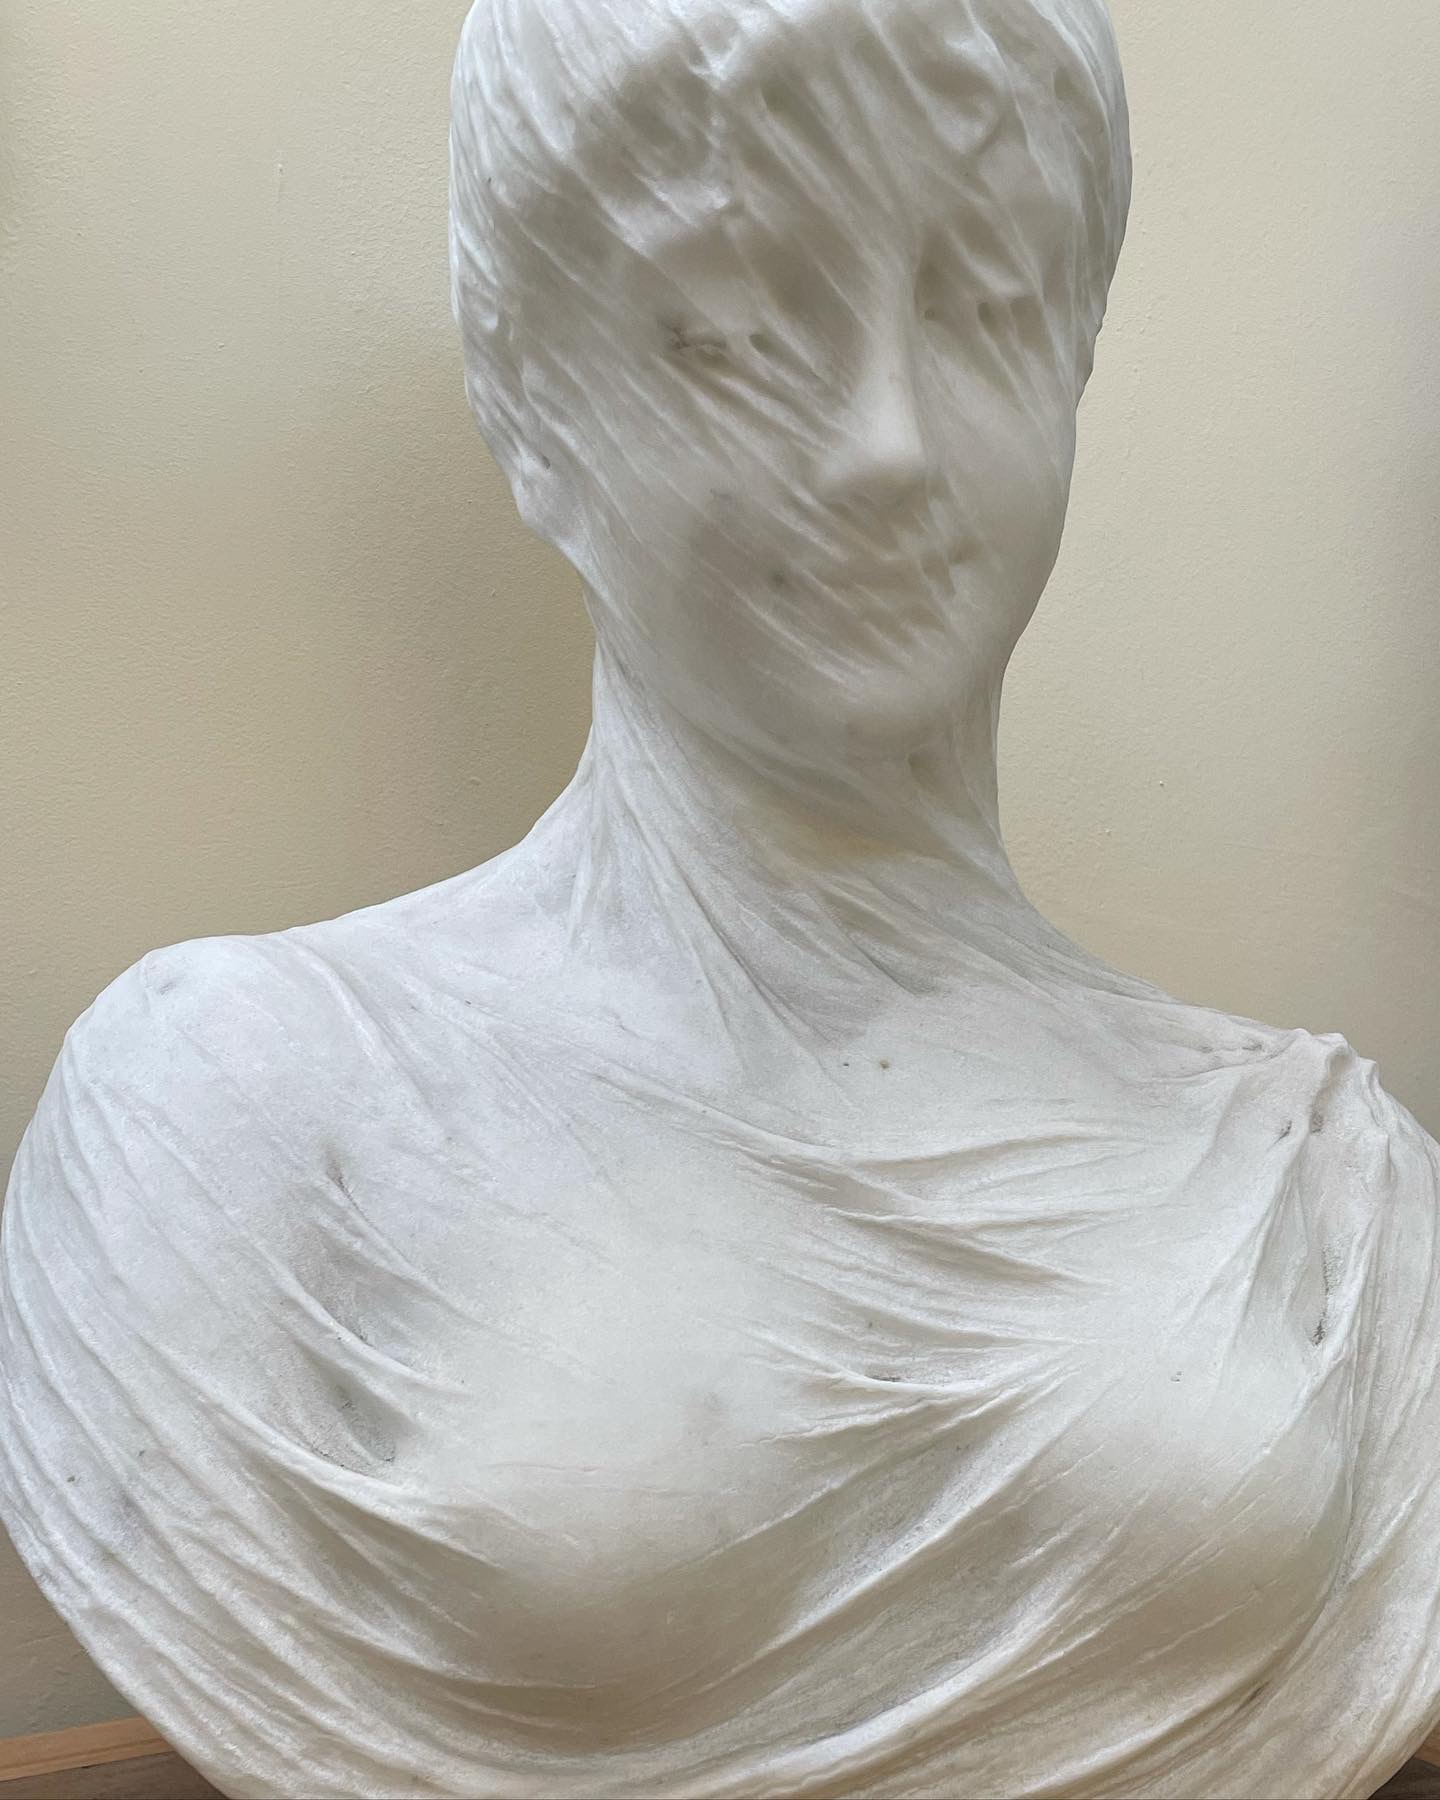 Cesare-lapini-buste-albâtre-italie-xixe-femme-buste-voile-veiled-maiden-1890-italie-aurore-morisse-affaire-conclue1